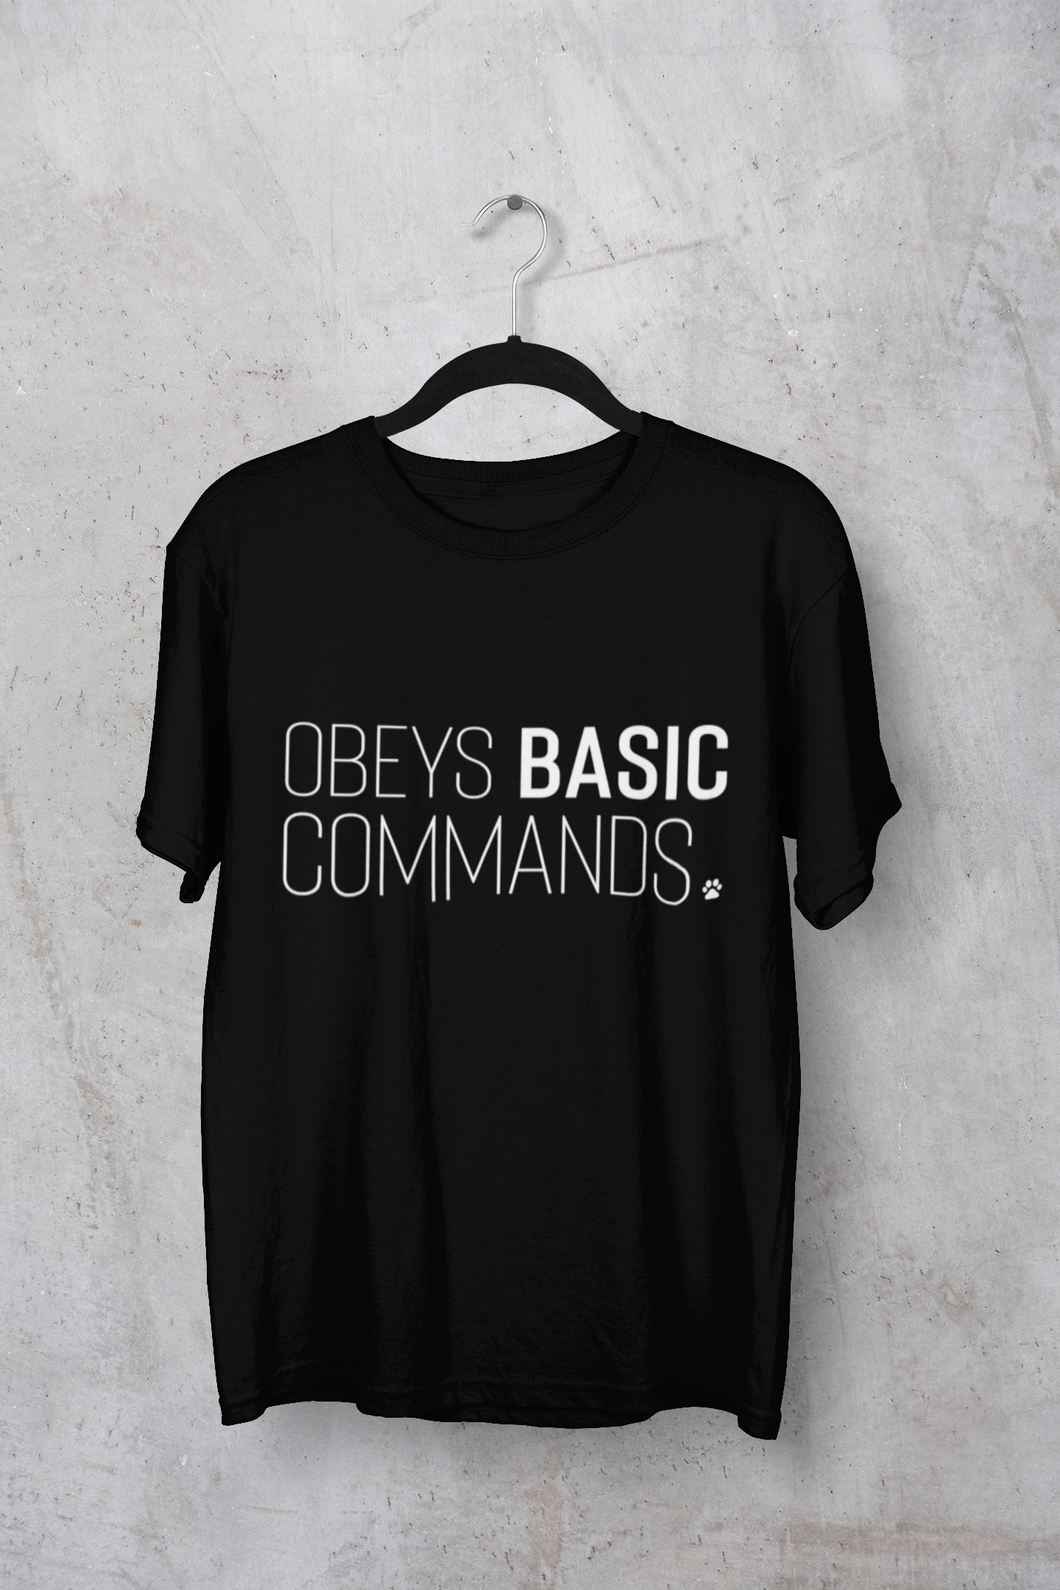 Obeys Basic Commands Men's/Unisex or Women's T-shirt